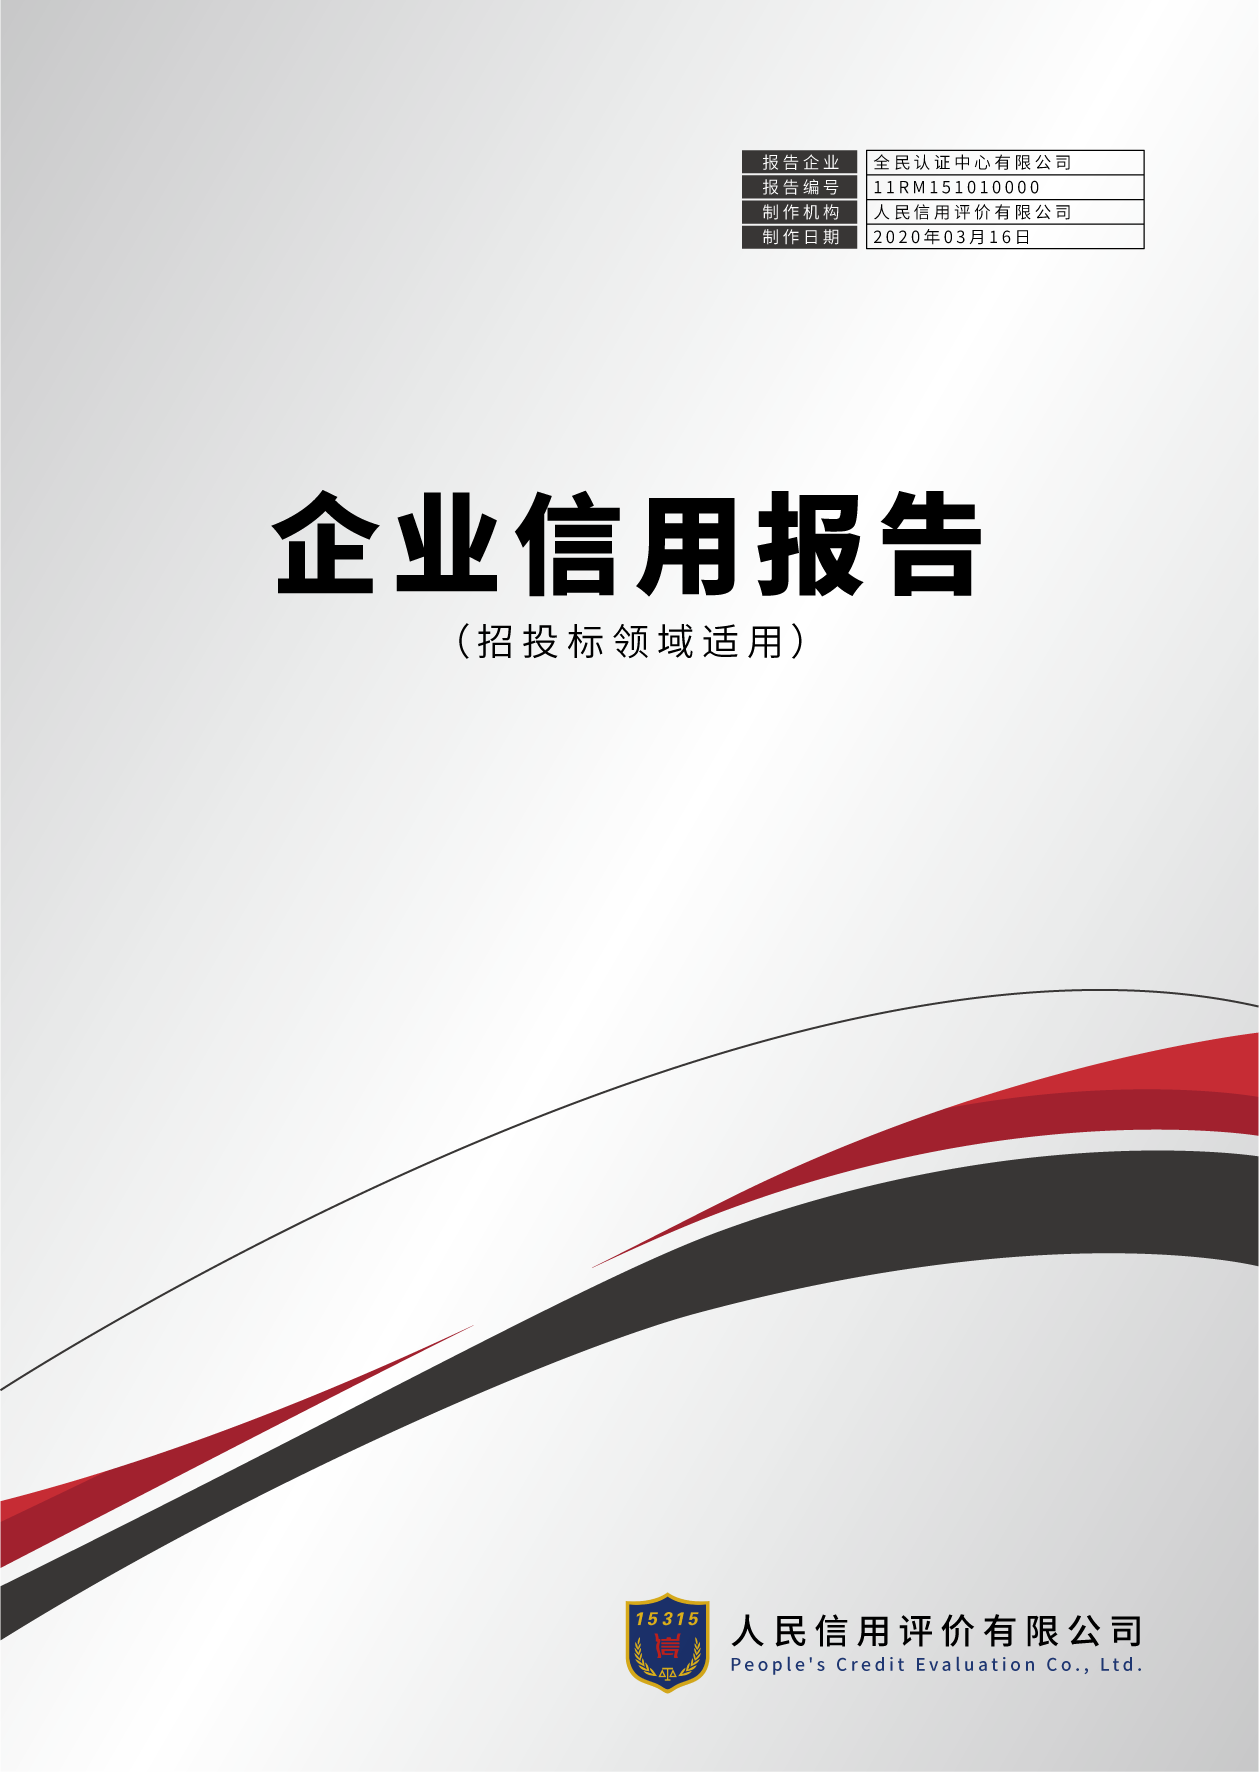 深圳市第三方信用服务机构信用评级报告